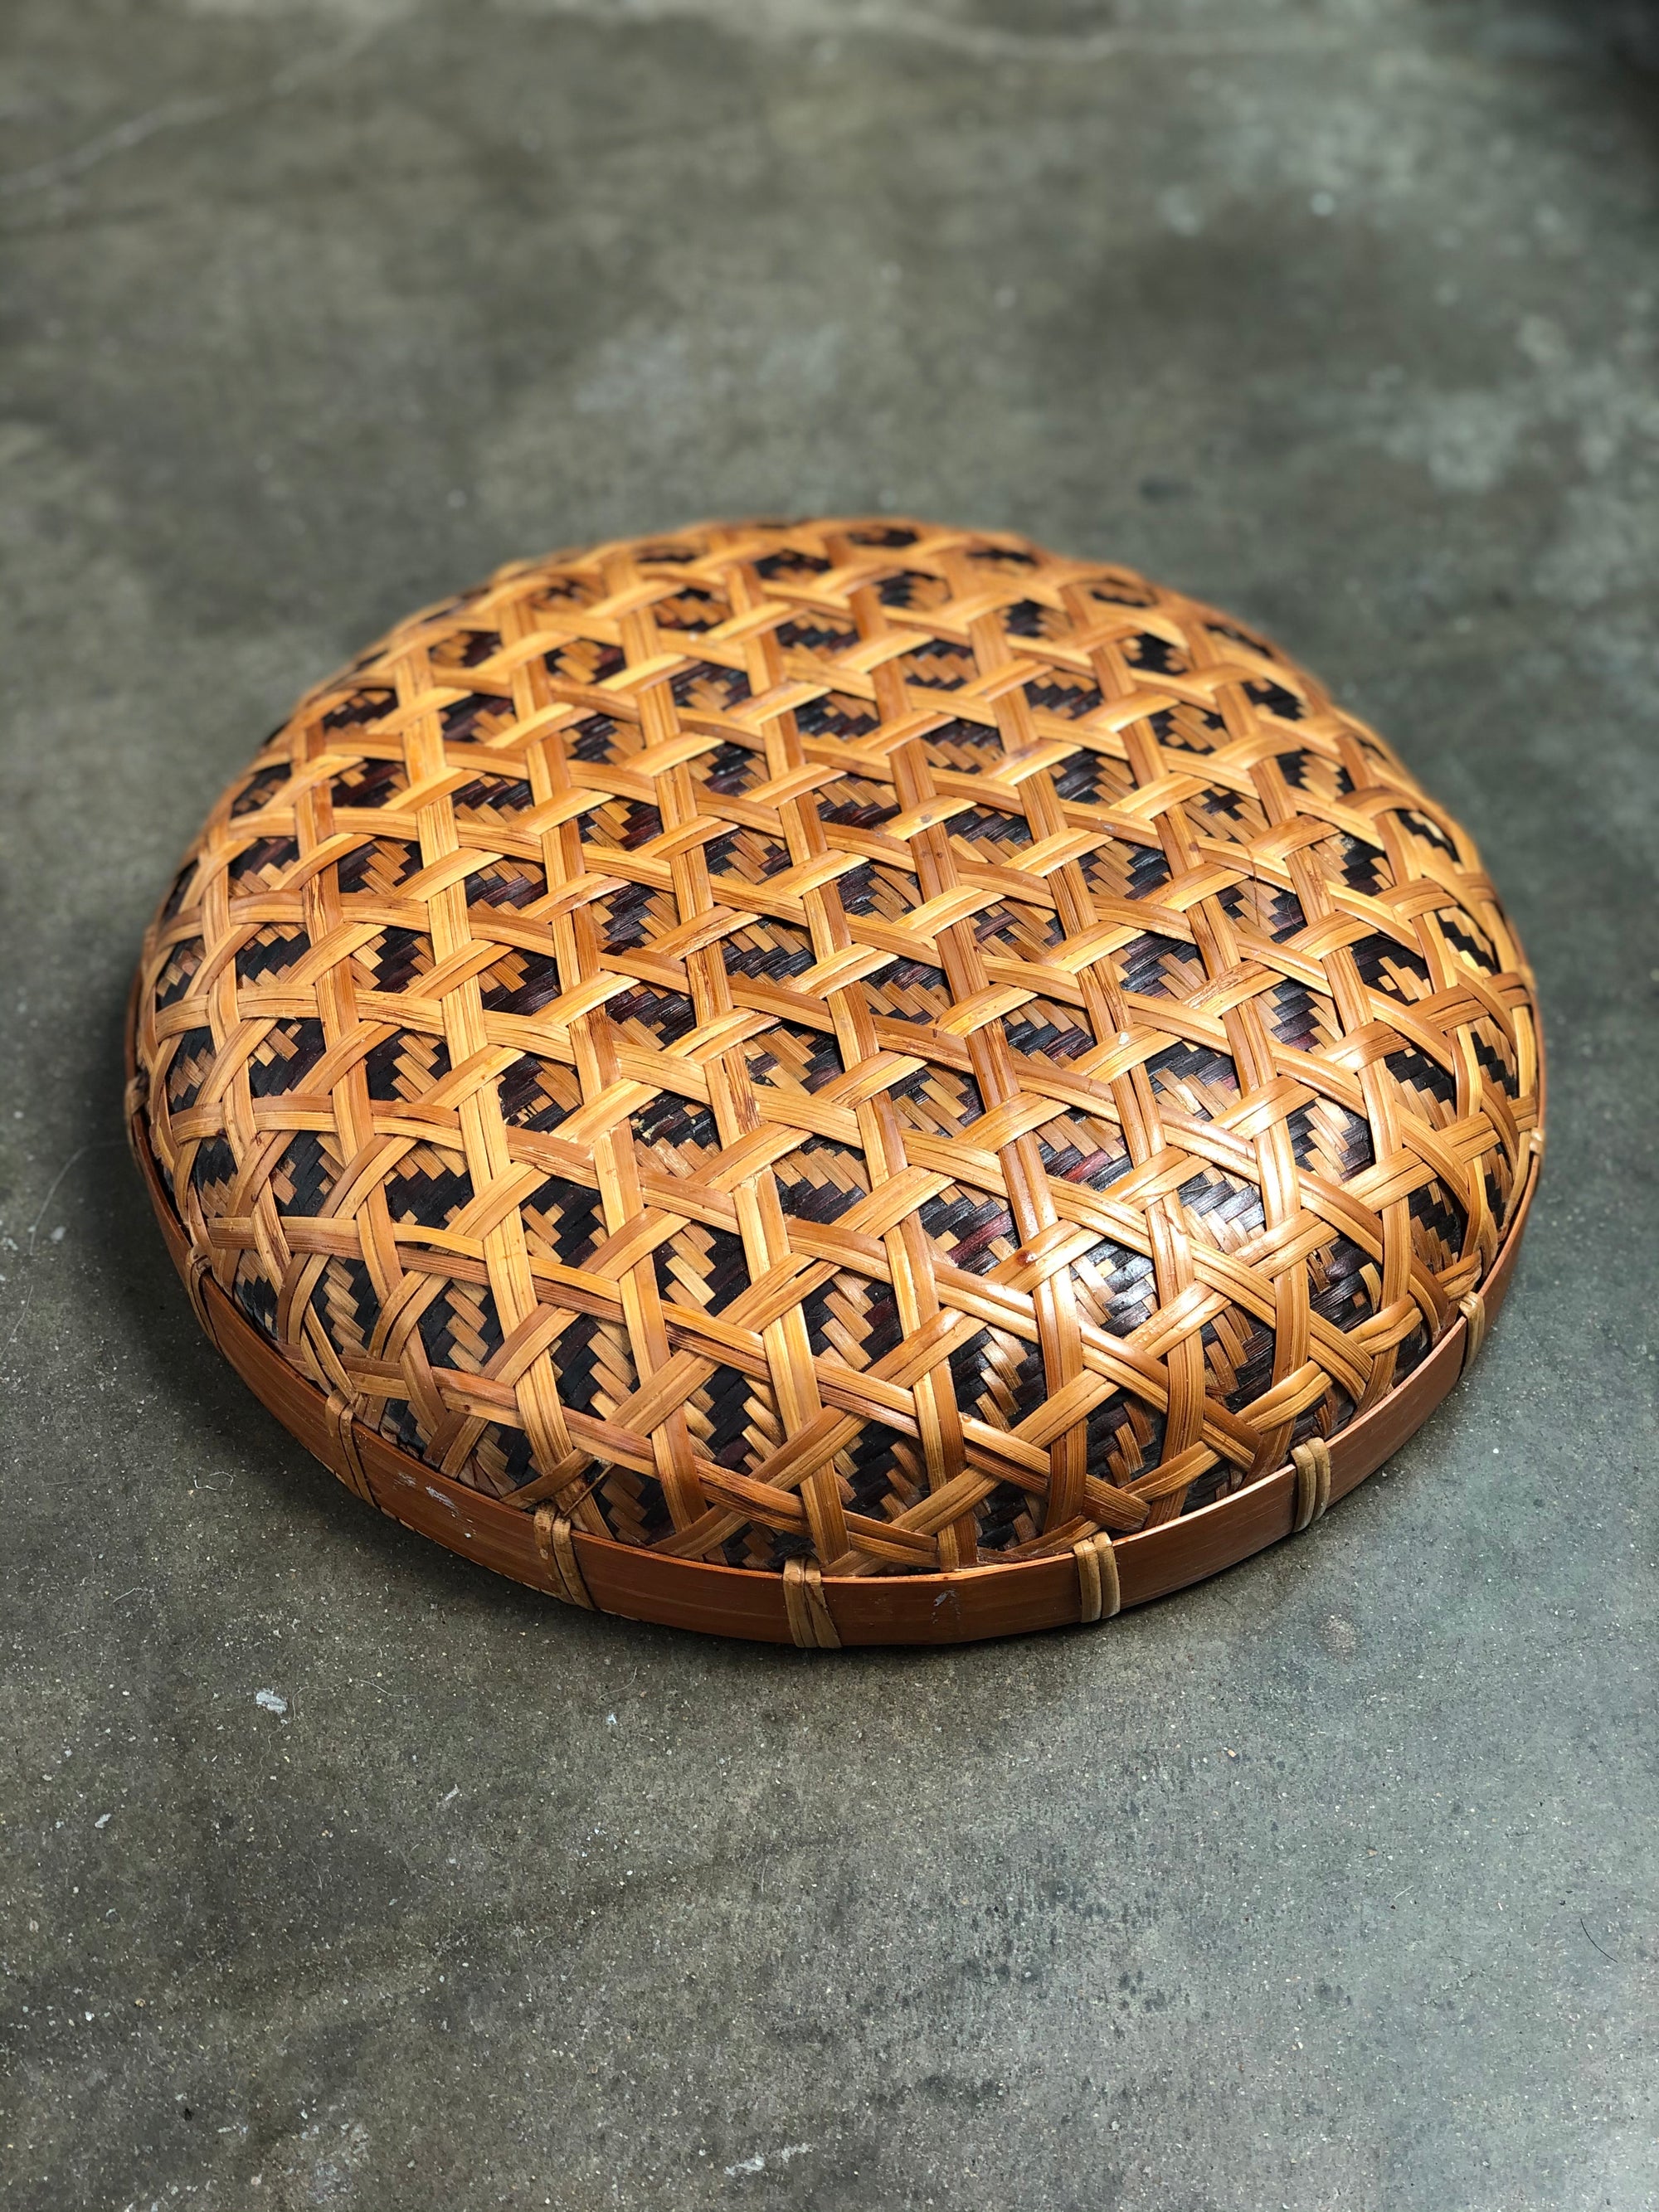 Vintage Woven Basket